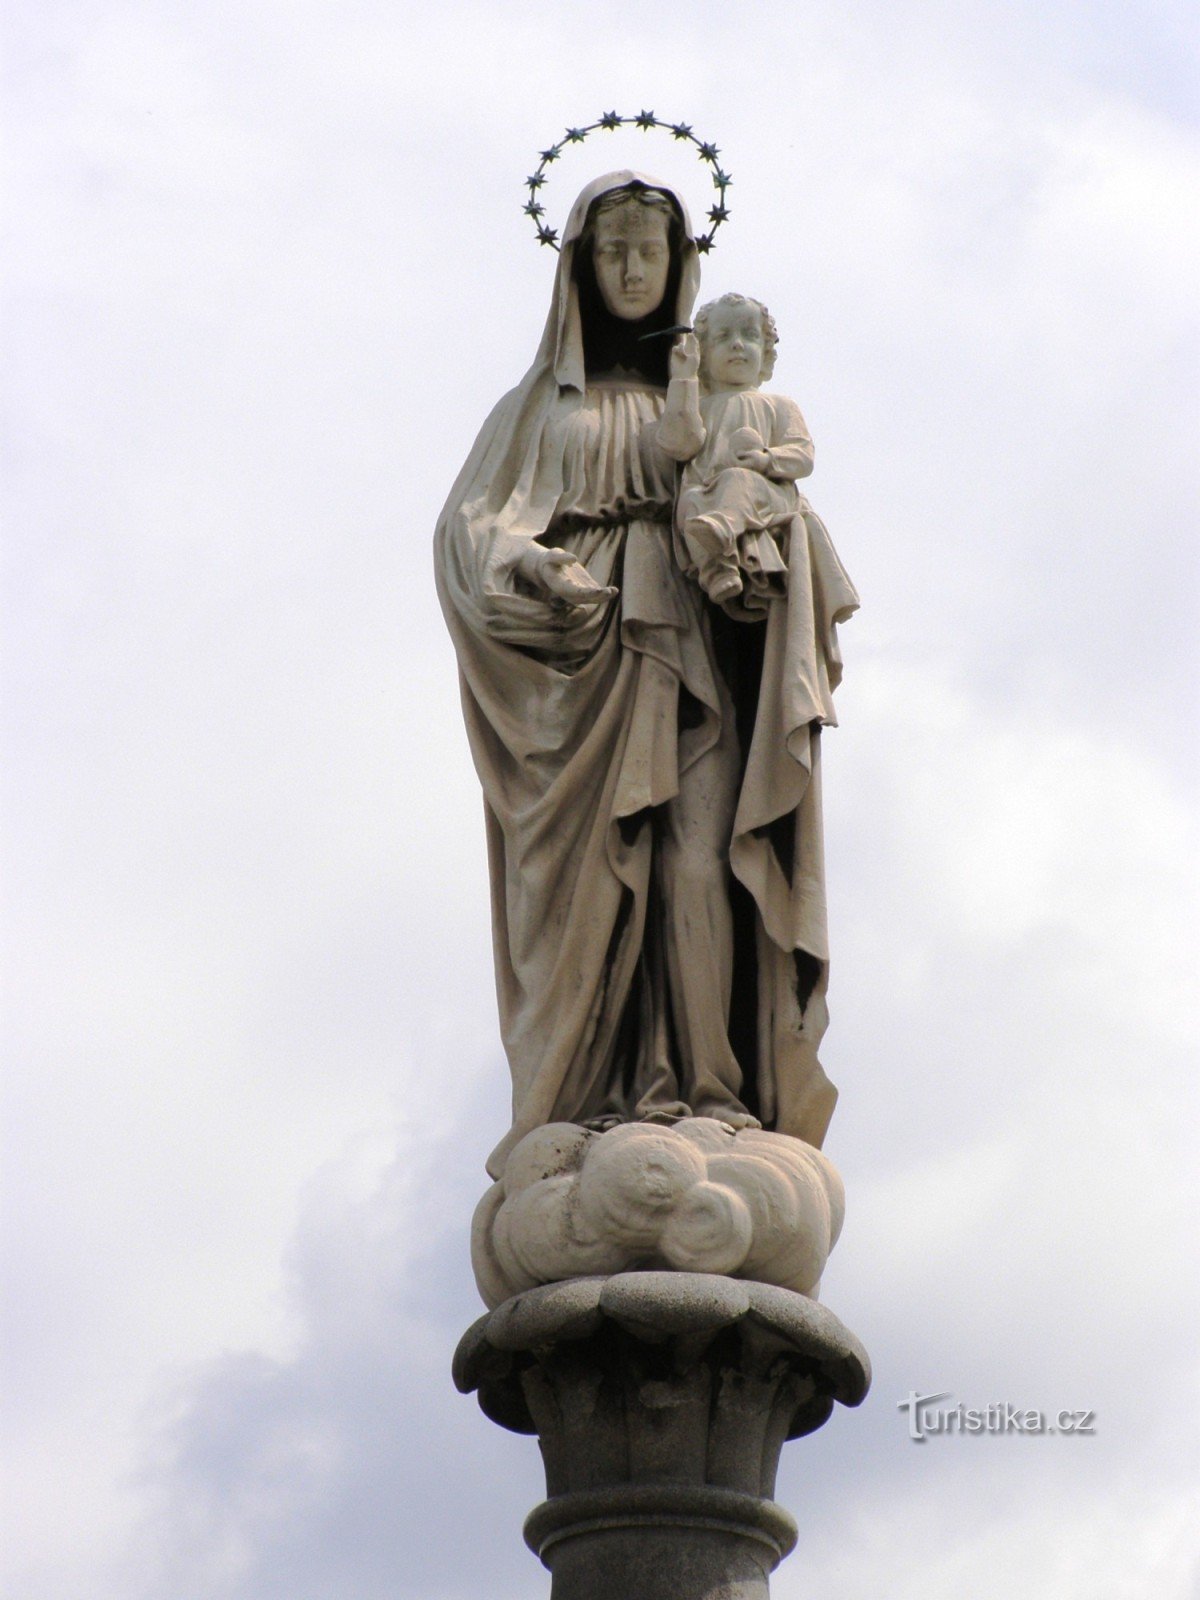 Žulová - una columna de granito con una estatua de Nuestra Señora